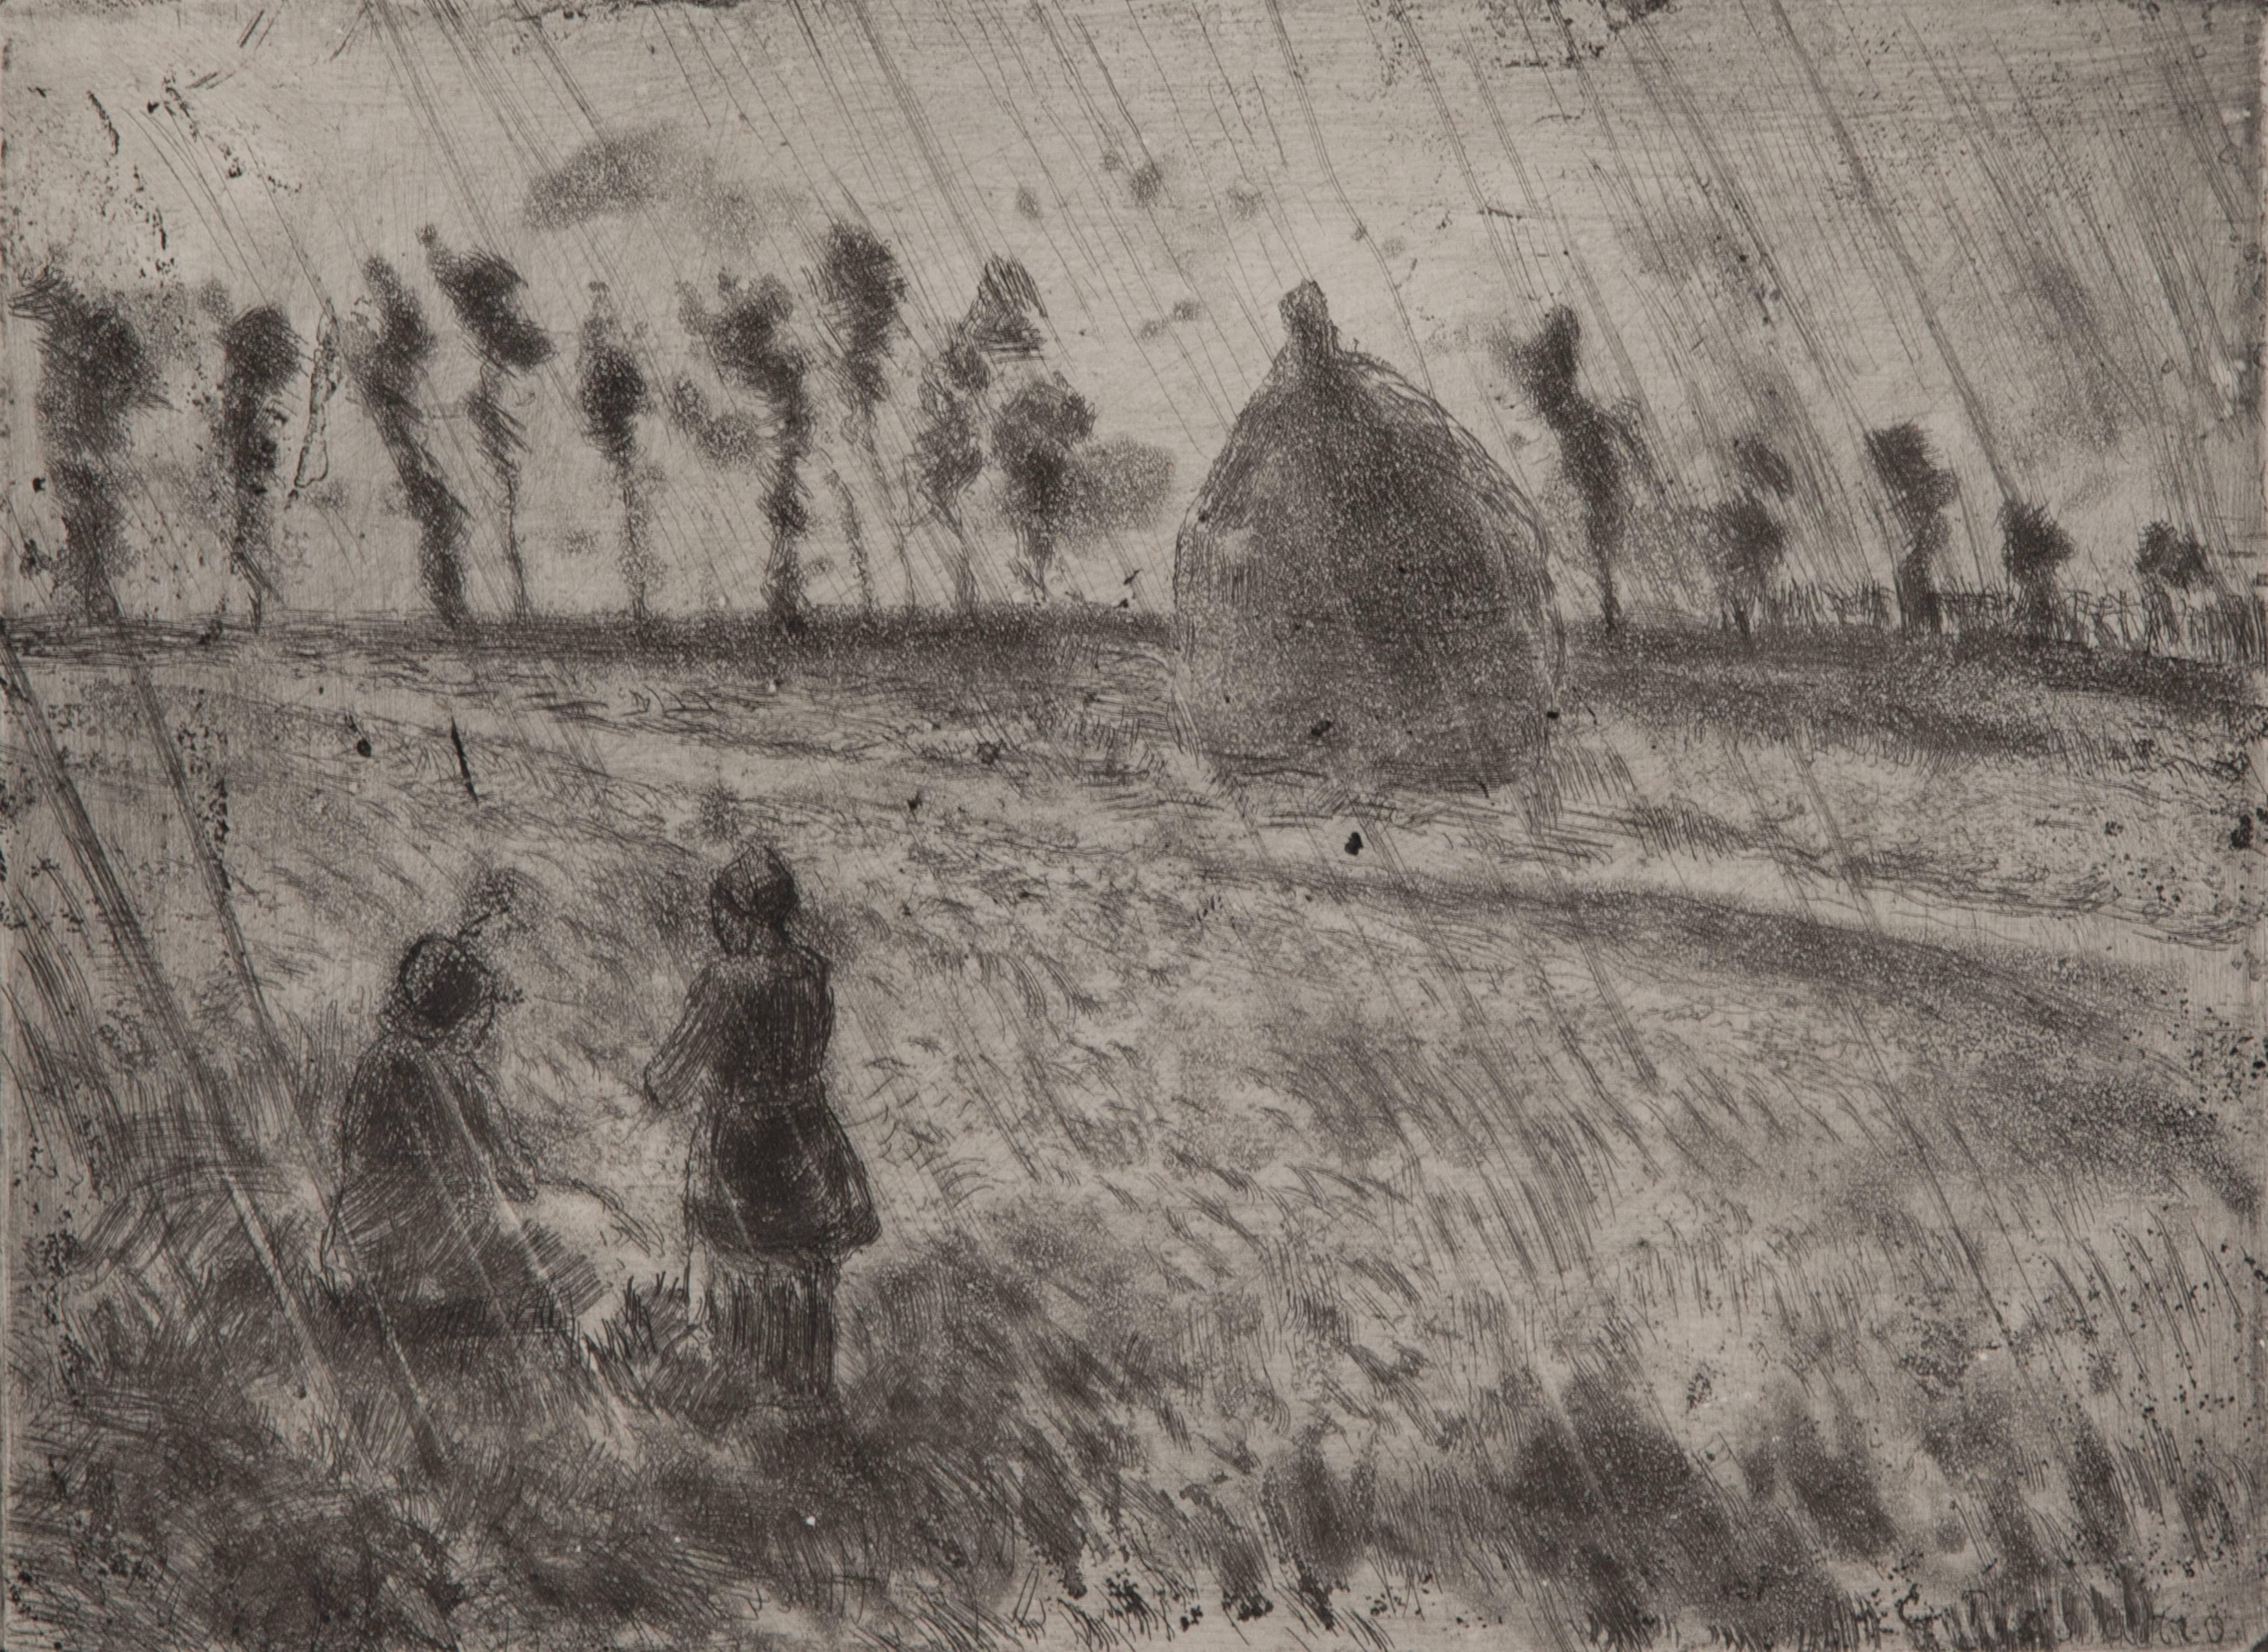 Effet de pluie by Camille Pissarro - Landscape etching